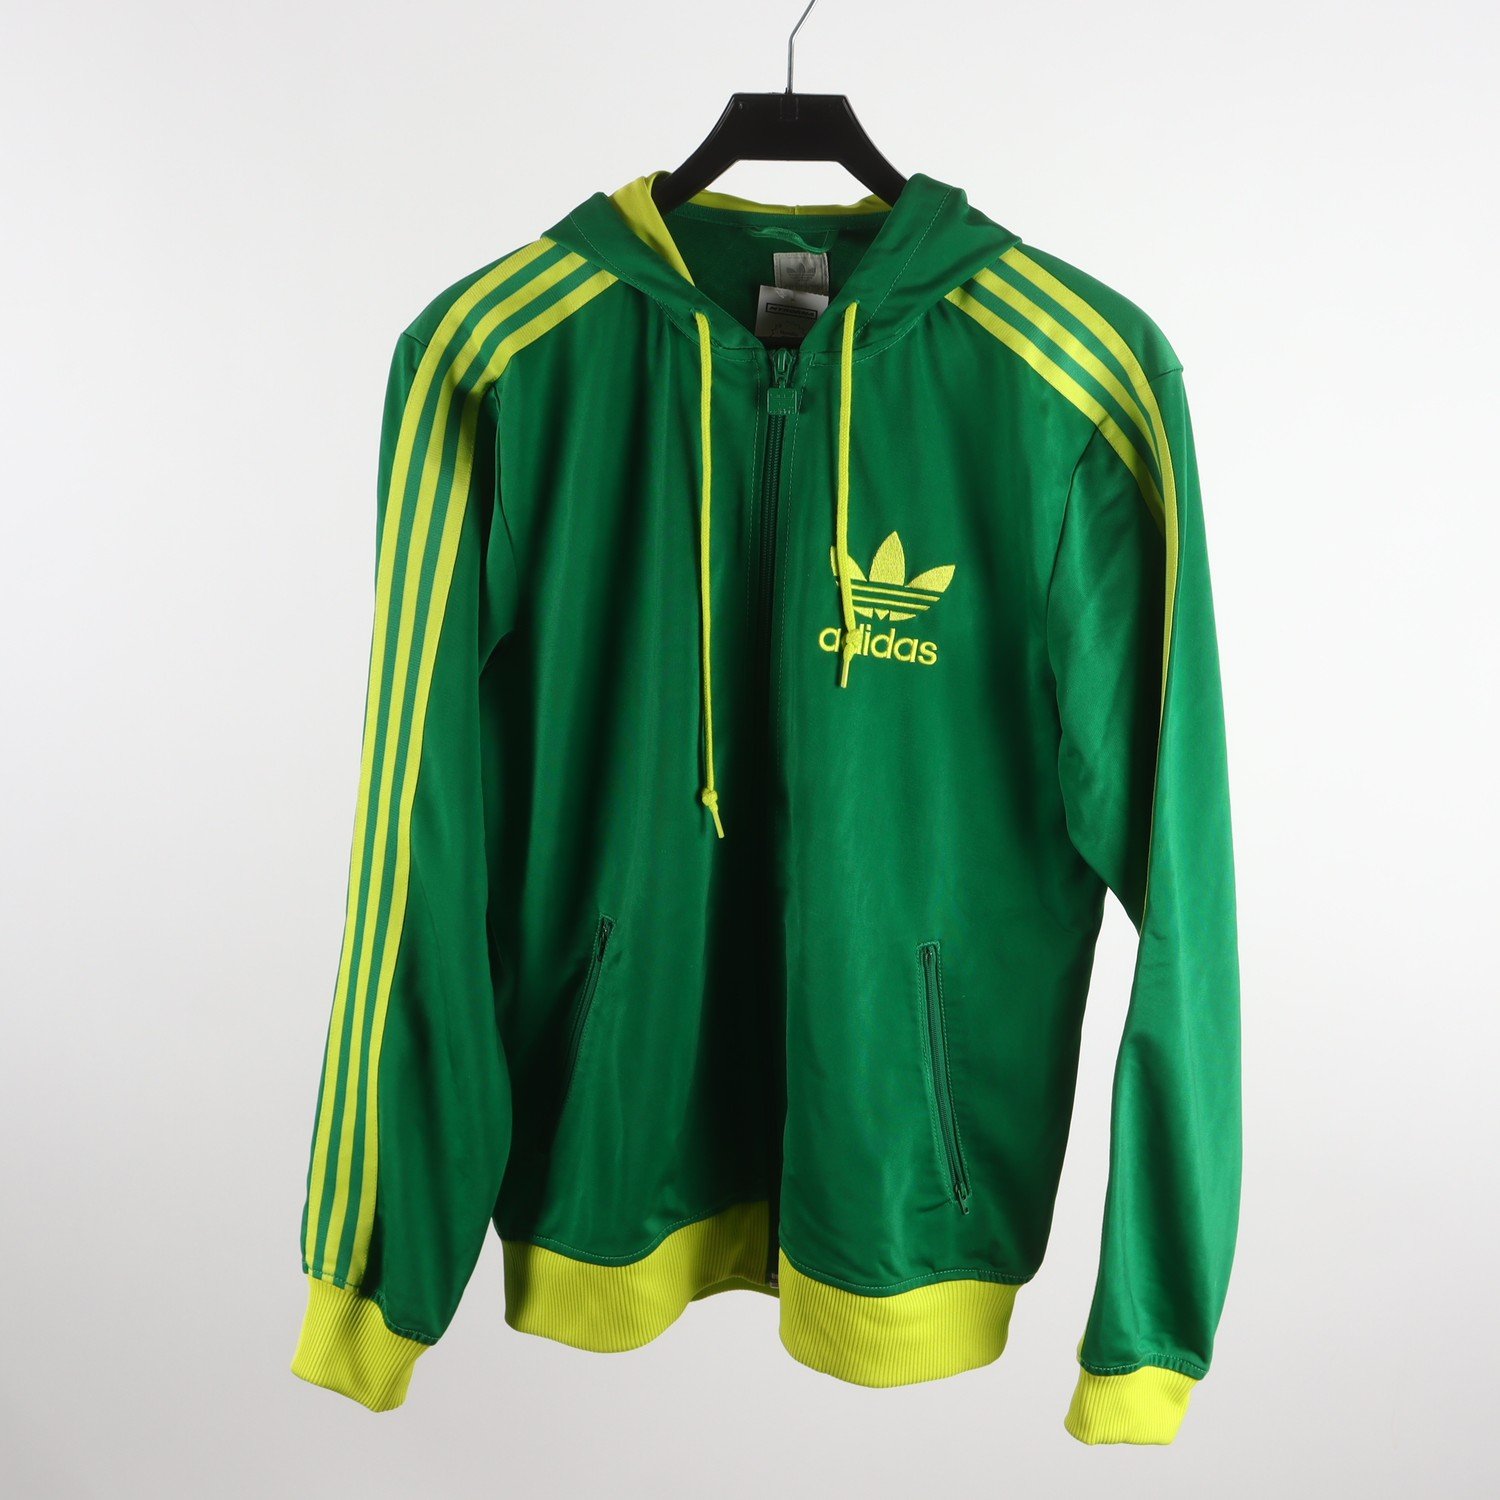 Sportjacka, Adidas, grön, stl. M